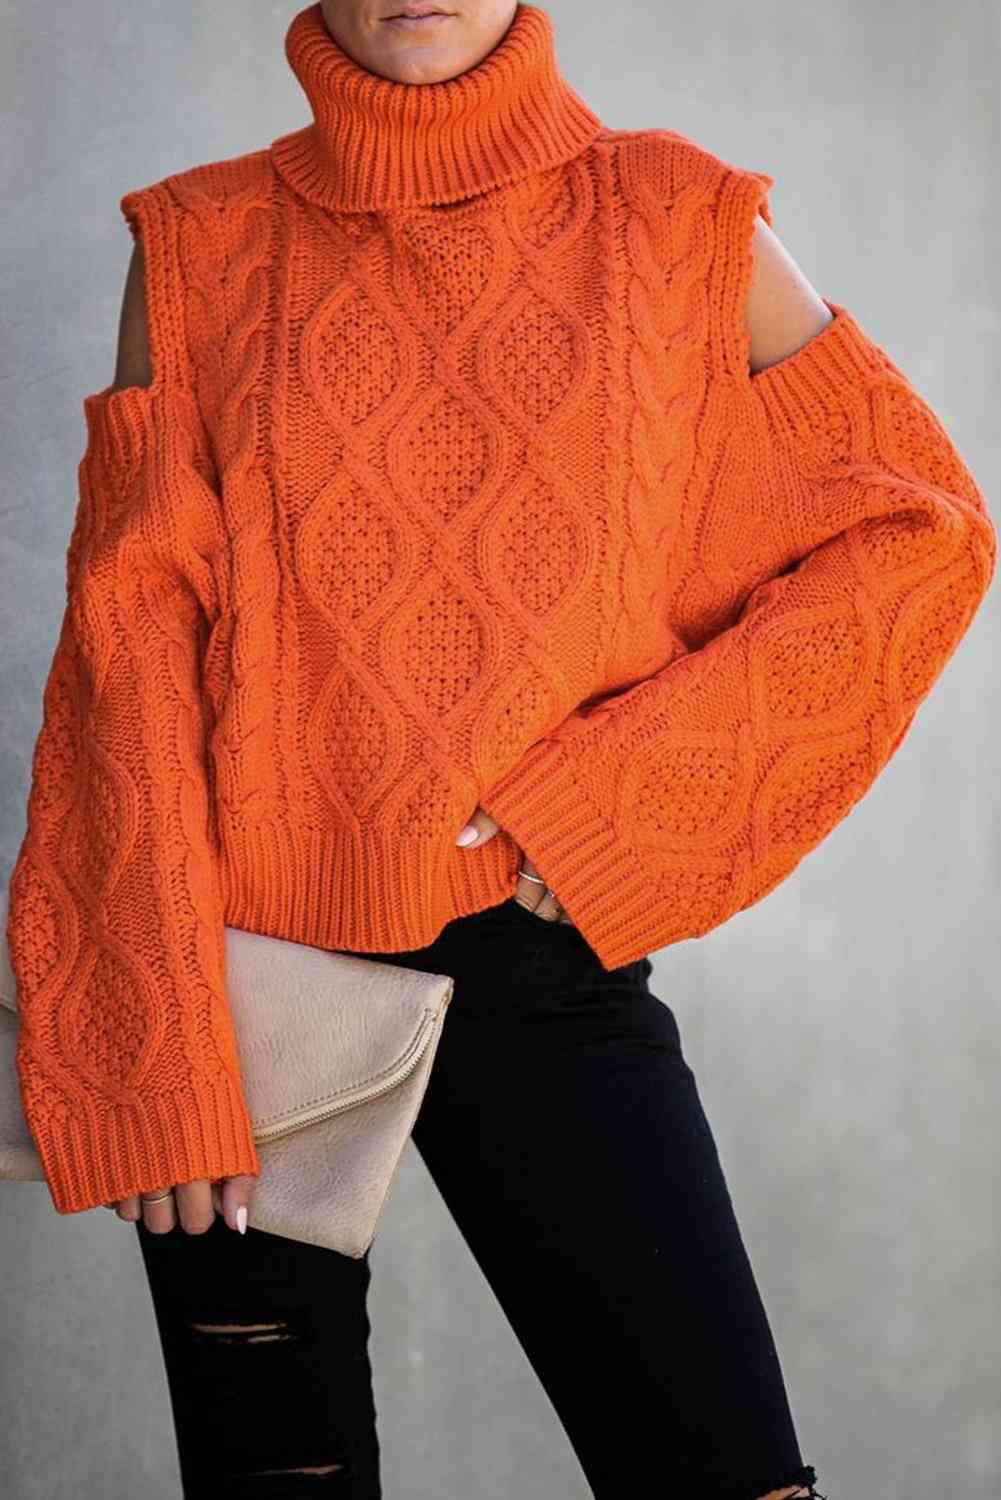 Pulover, džemper sa teksturom hladnih ramena